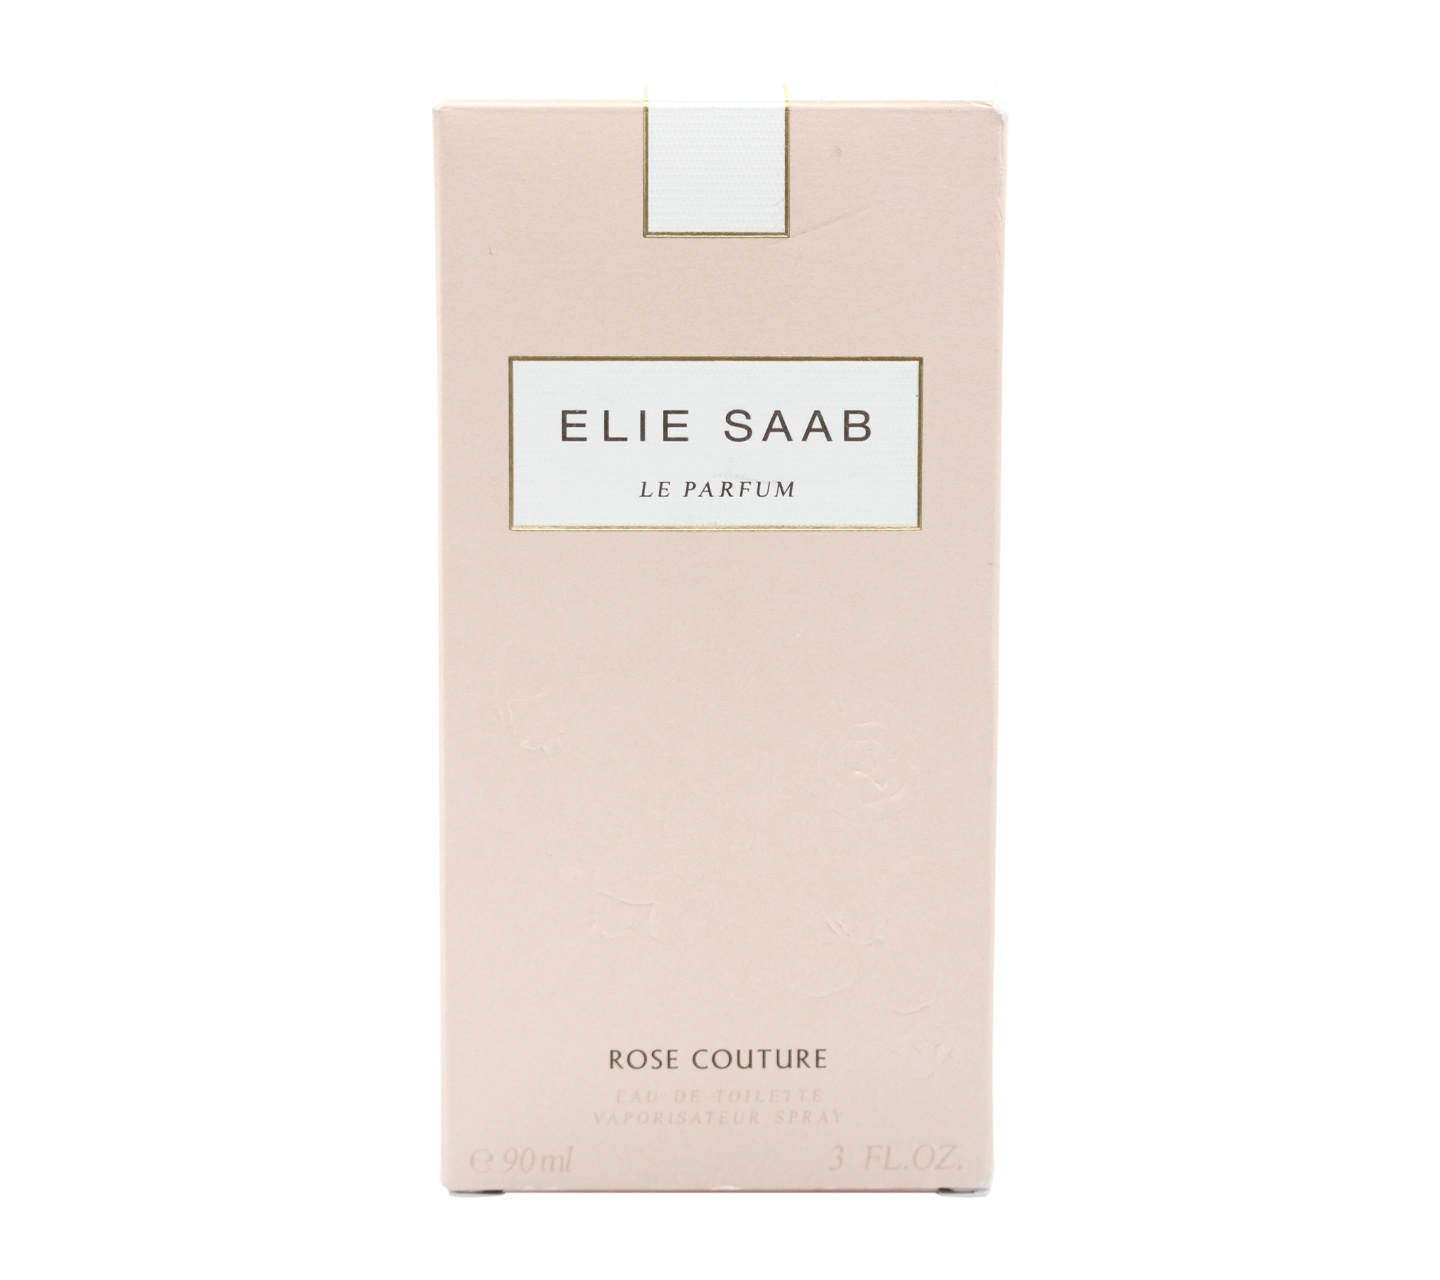 Elie Saab Le Parfum Rose Couture Fragrance